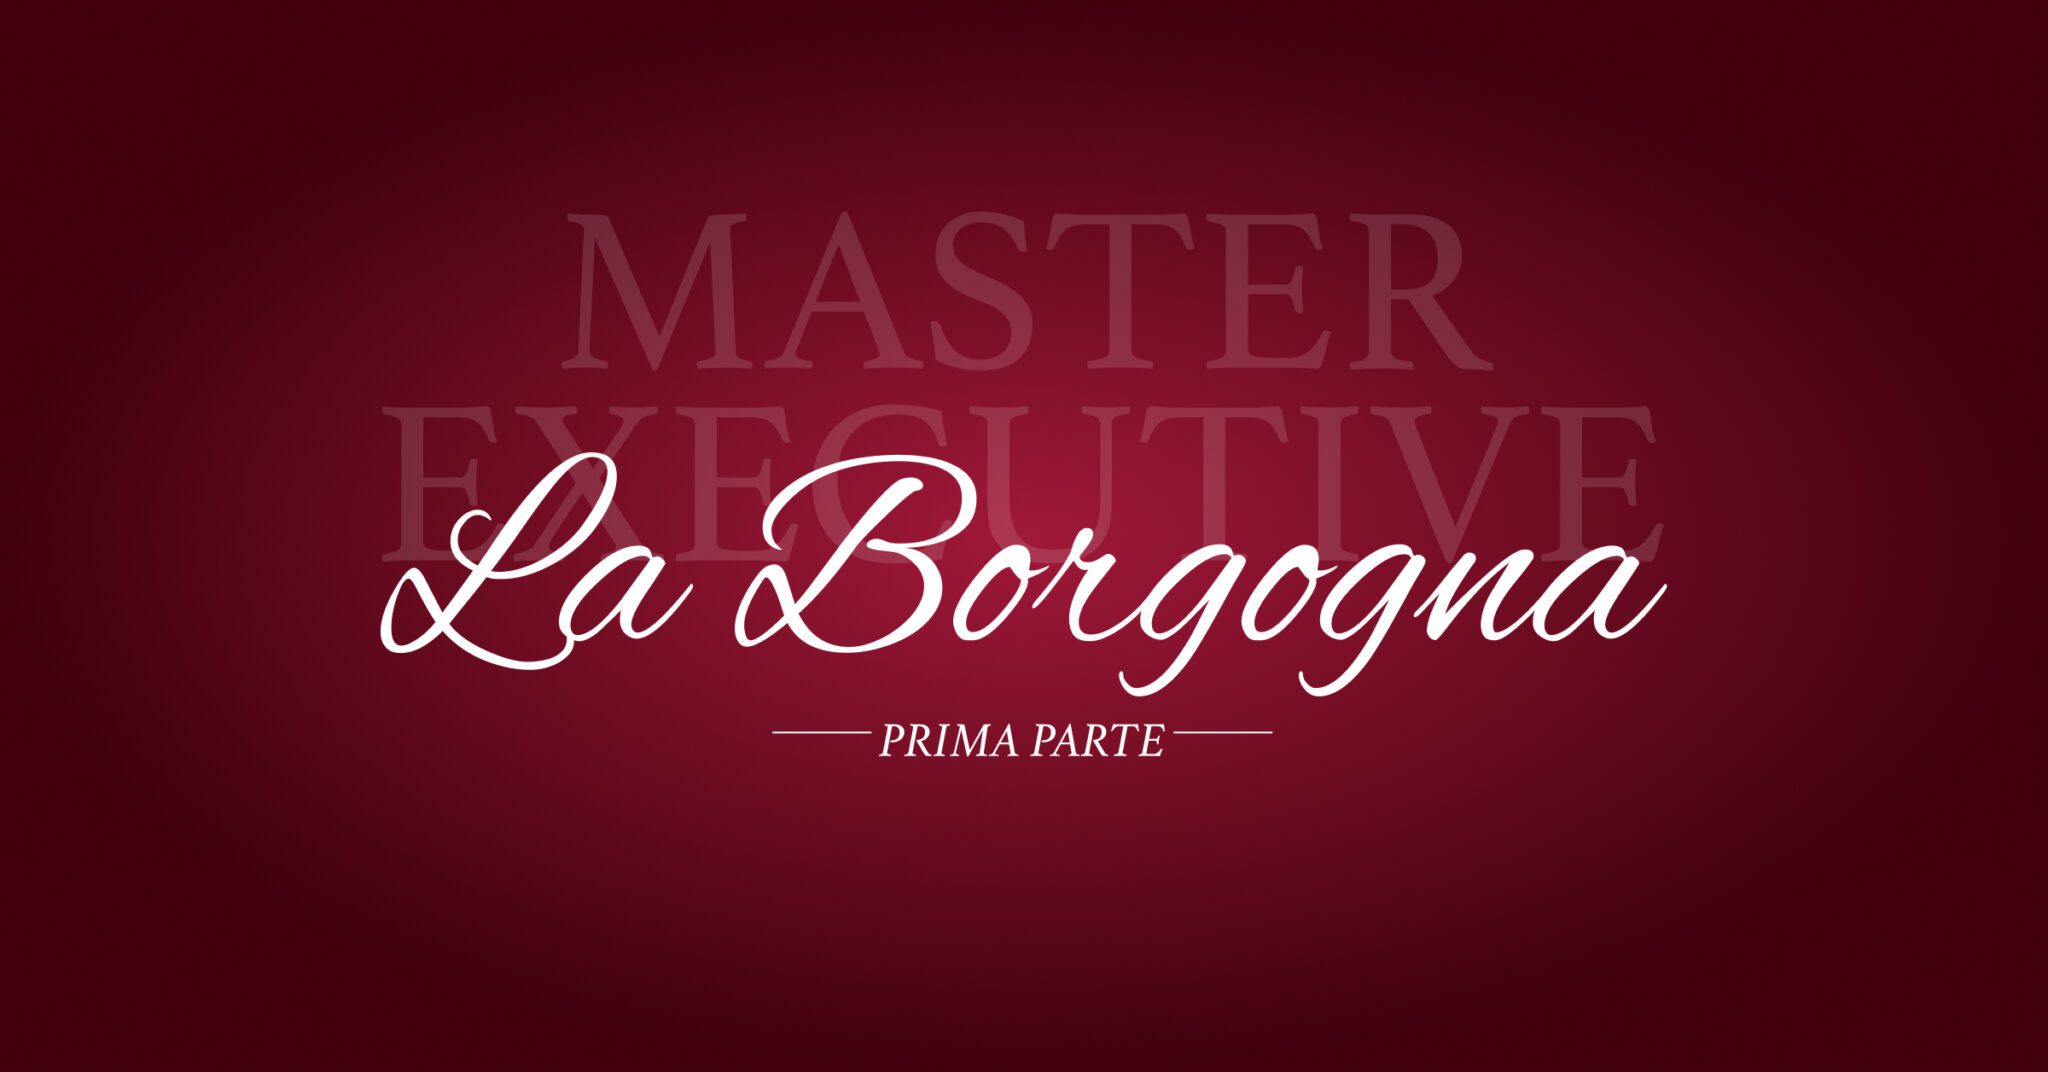 La Borgogna: Il Master Executive 1